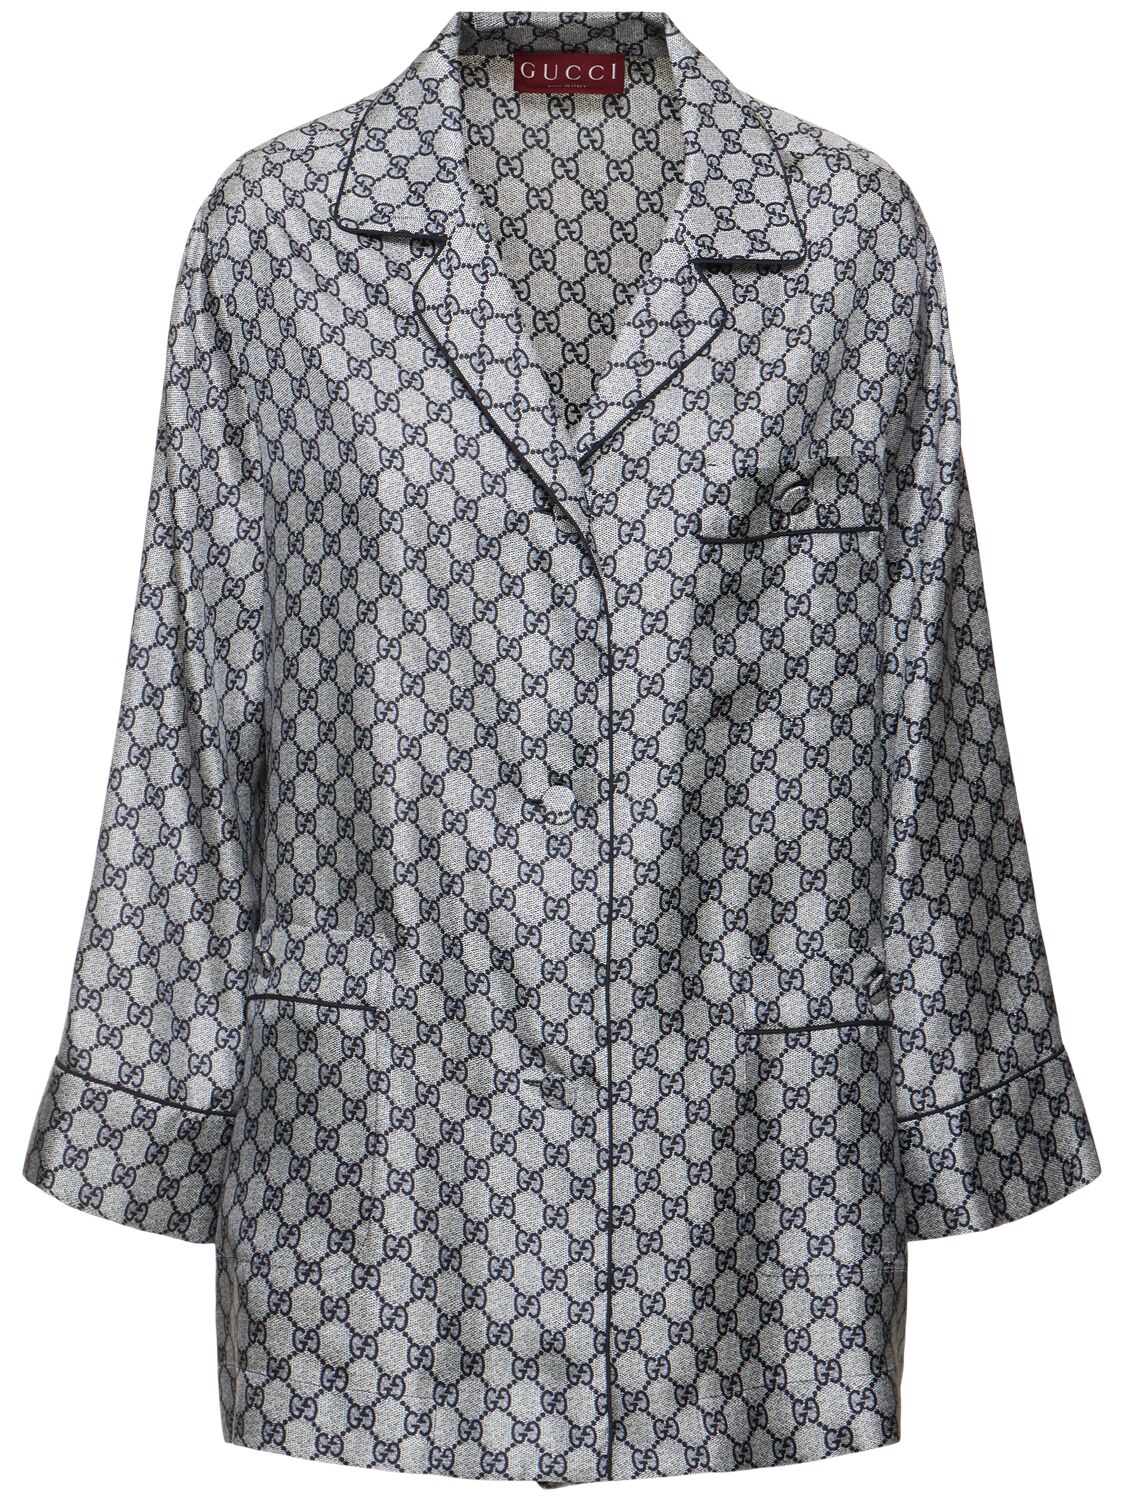 Gg Supreme Silk Shirt - GUCCI - Modalova